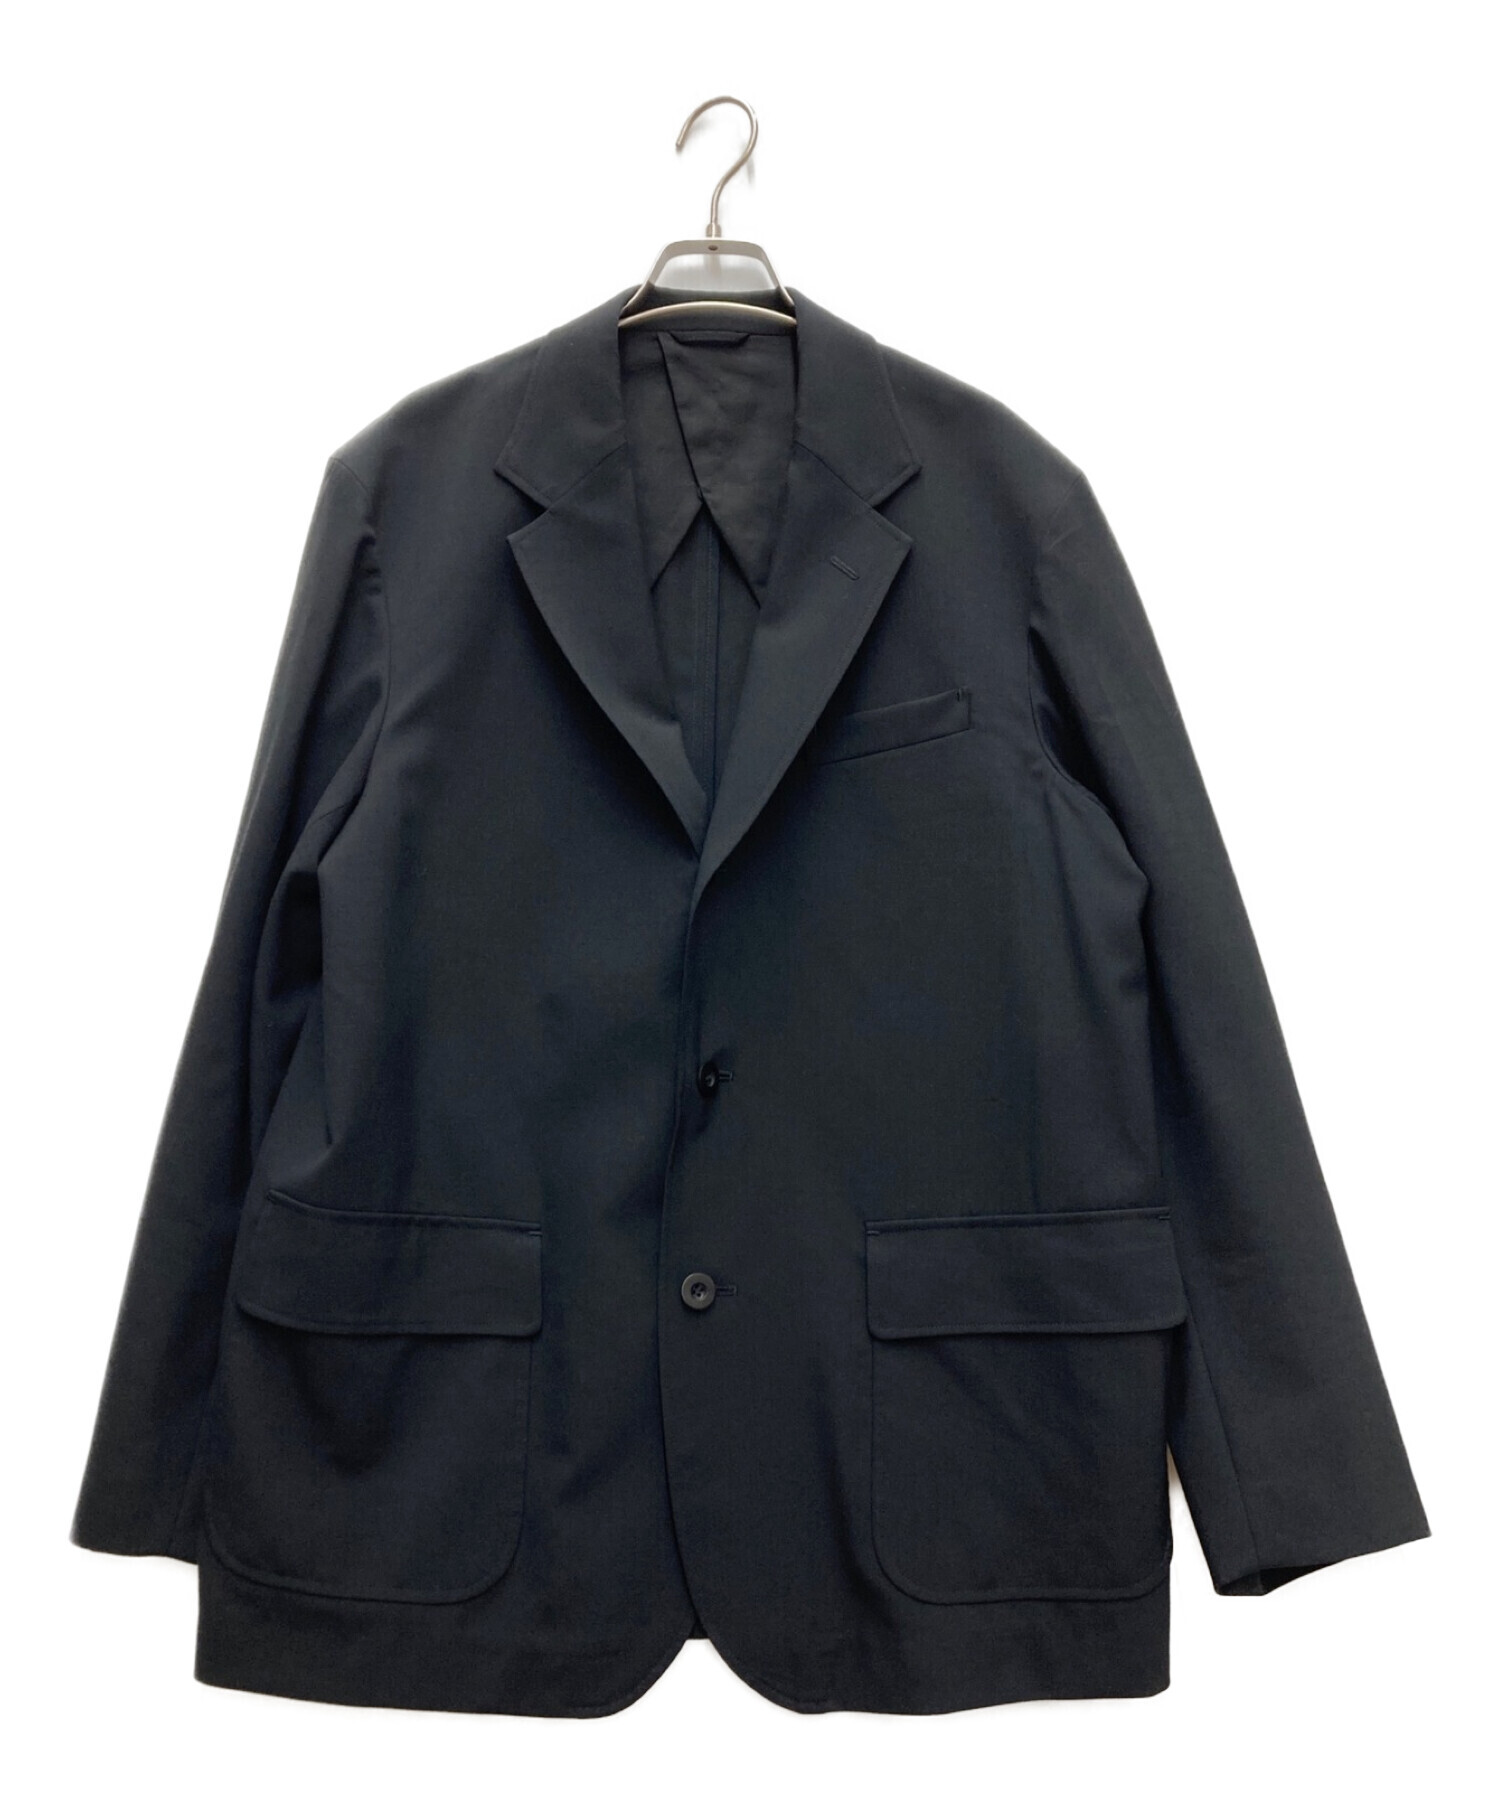 UNION LAUNCH (ユニオンランチ) Ron Herman (ロンハーマン) Tropical Fabric Jacket ブラック サイズ:L